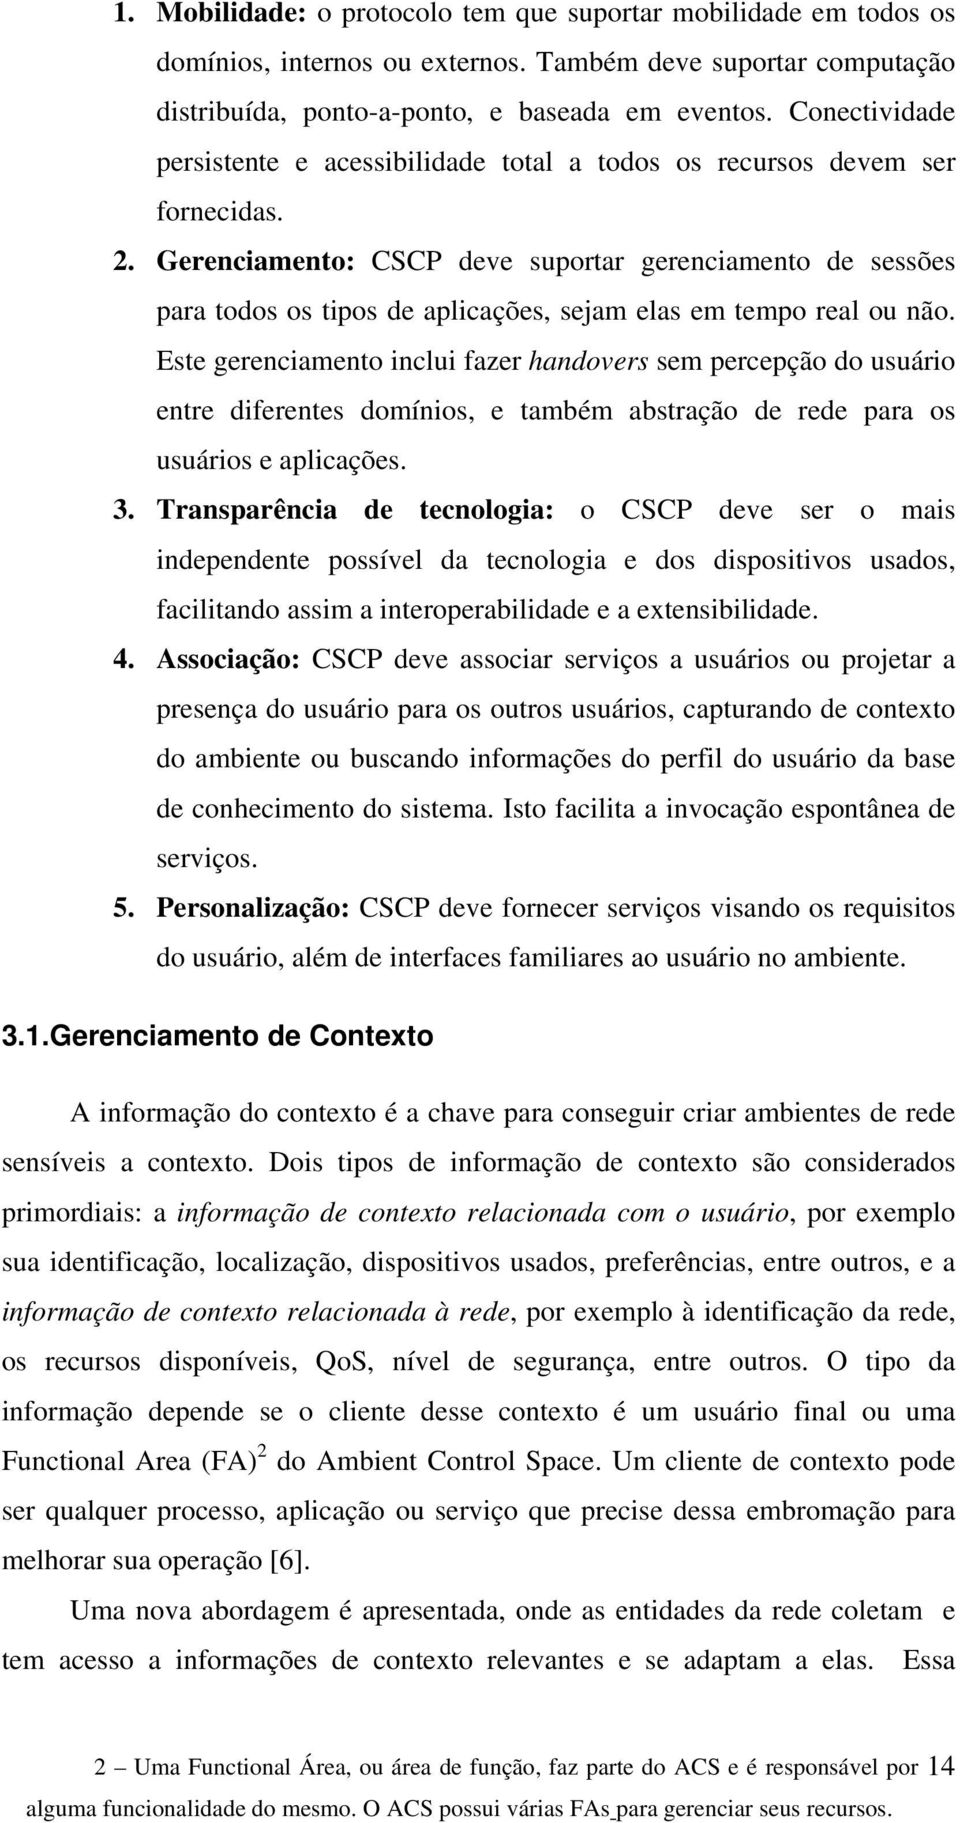 Gerenciamento: CSCP deve suportar gerenciamento de sessões para todos os tipos de aplicações, sejam elas em tempo real ou não.